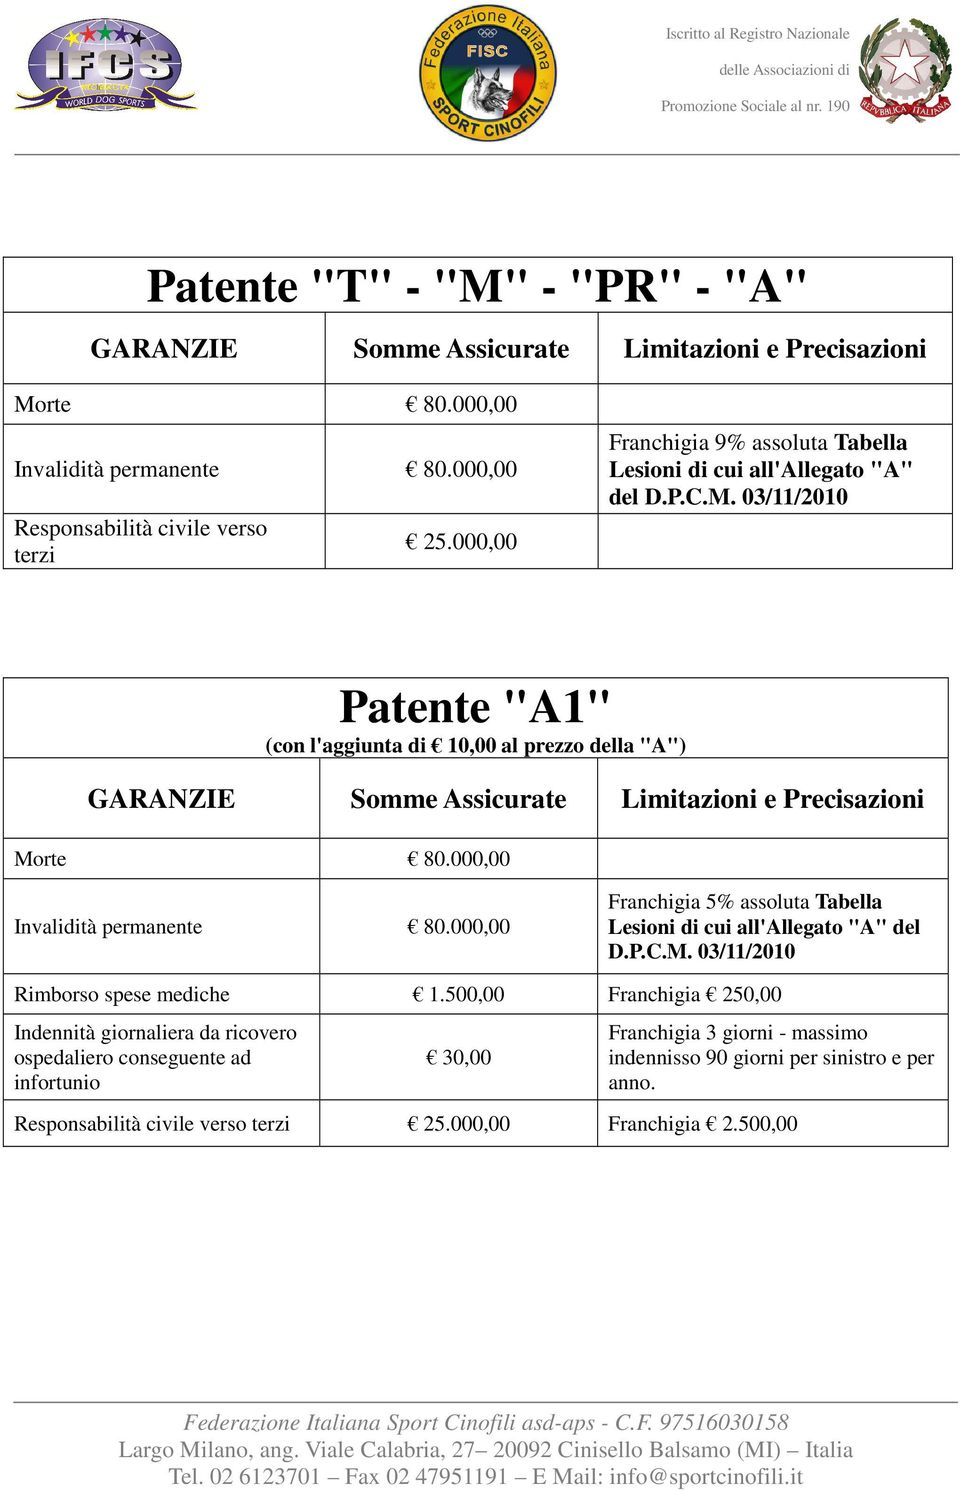 03/11/2010 Patente "A1" (con l'aggiunta di 10,00 al prezzo della "A") Franchigia 5% assoluta Tabella Lesioni di cui all'allegato "A" del